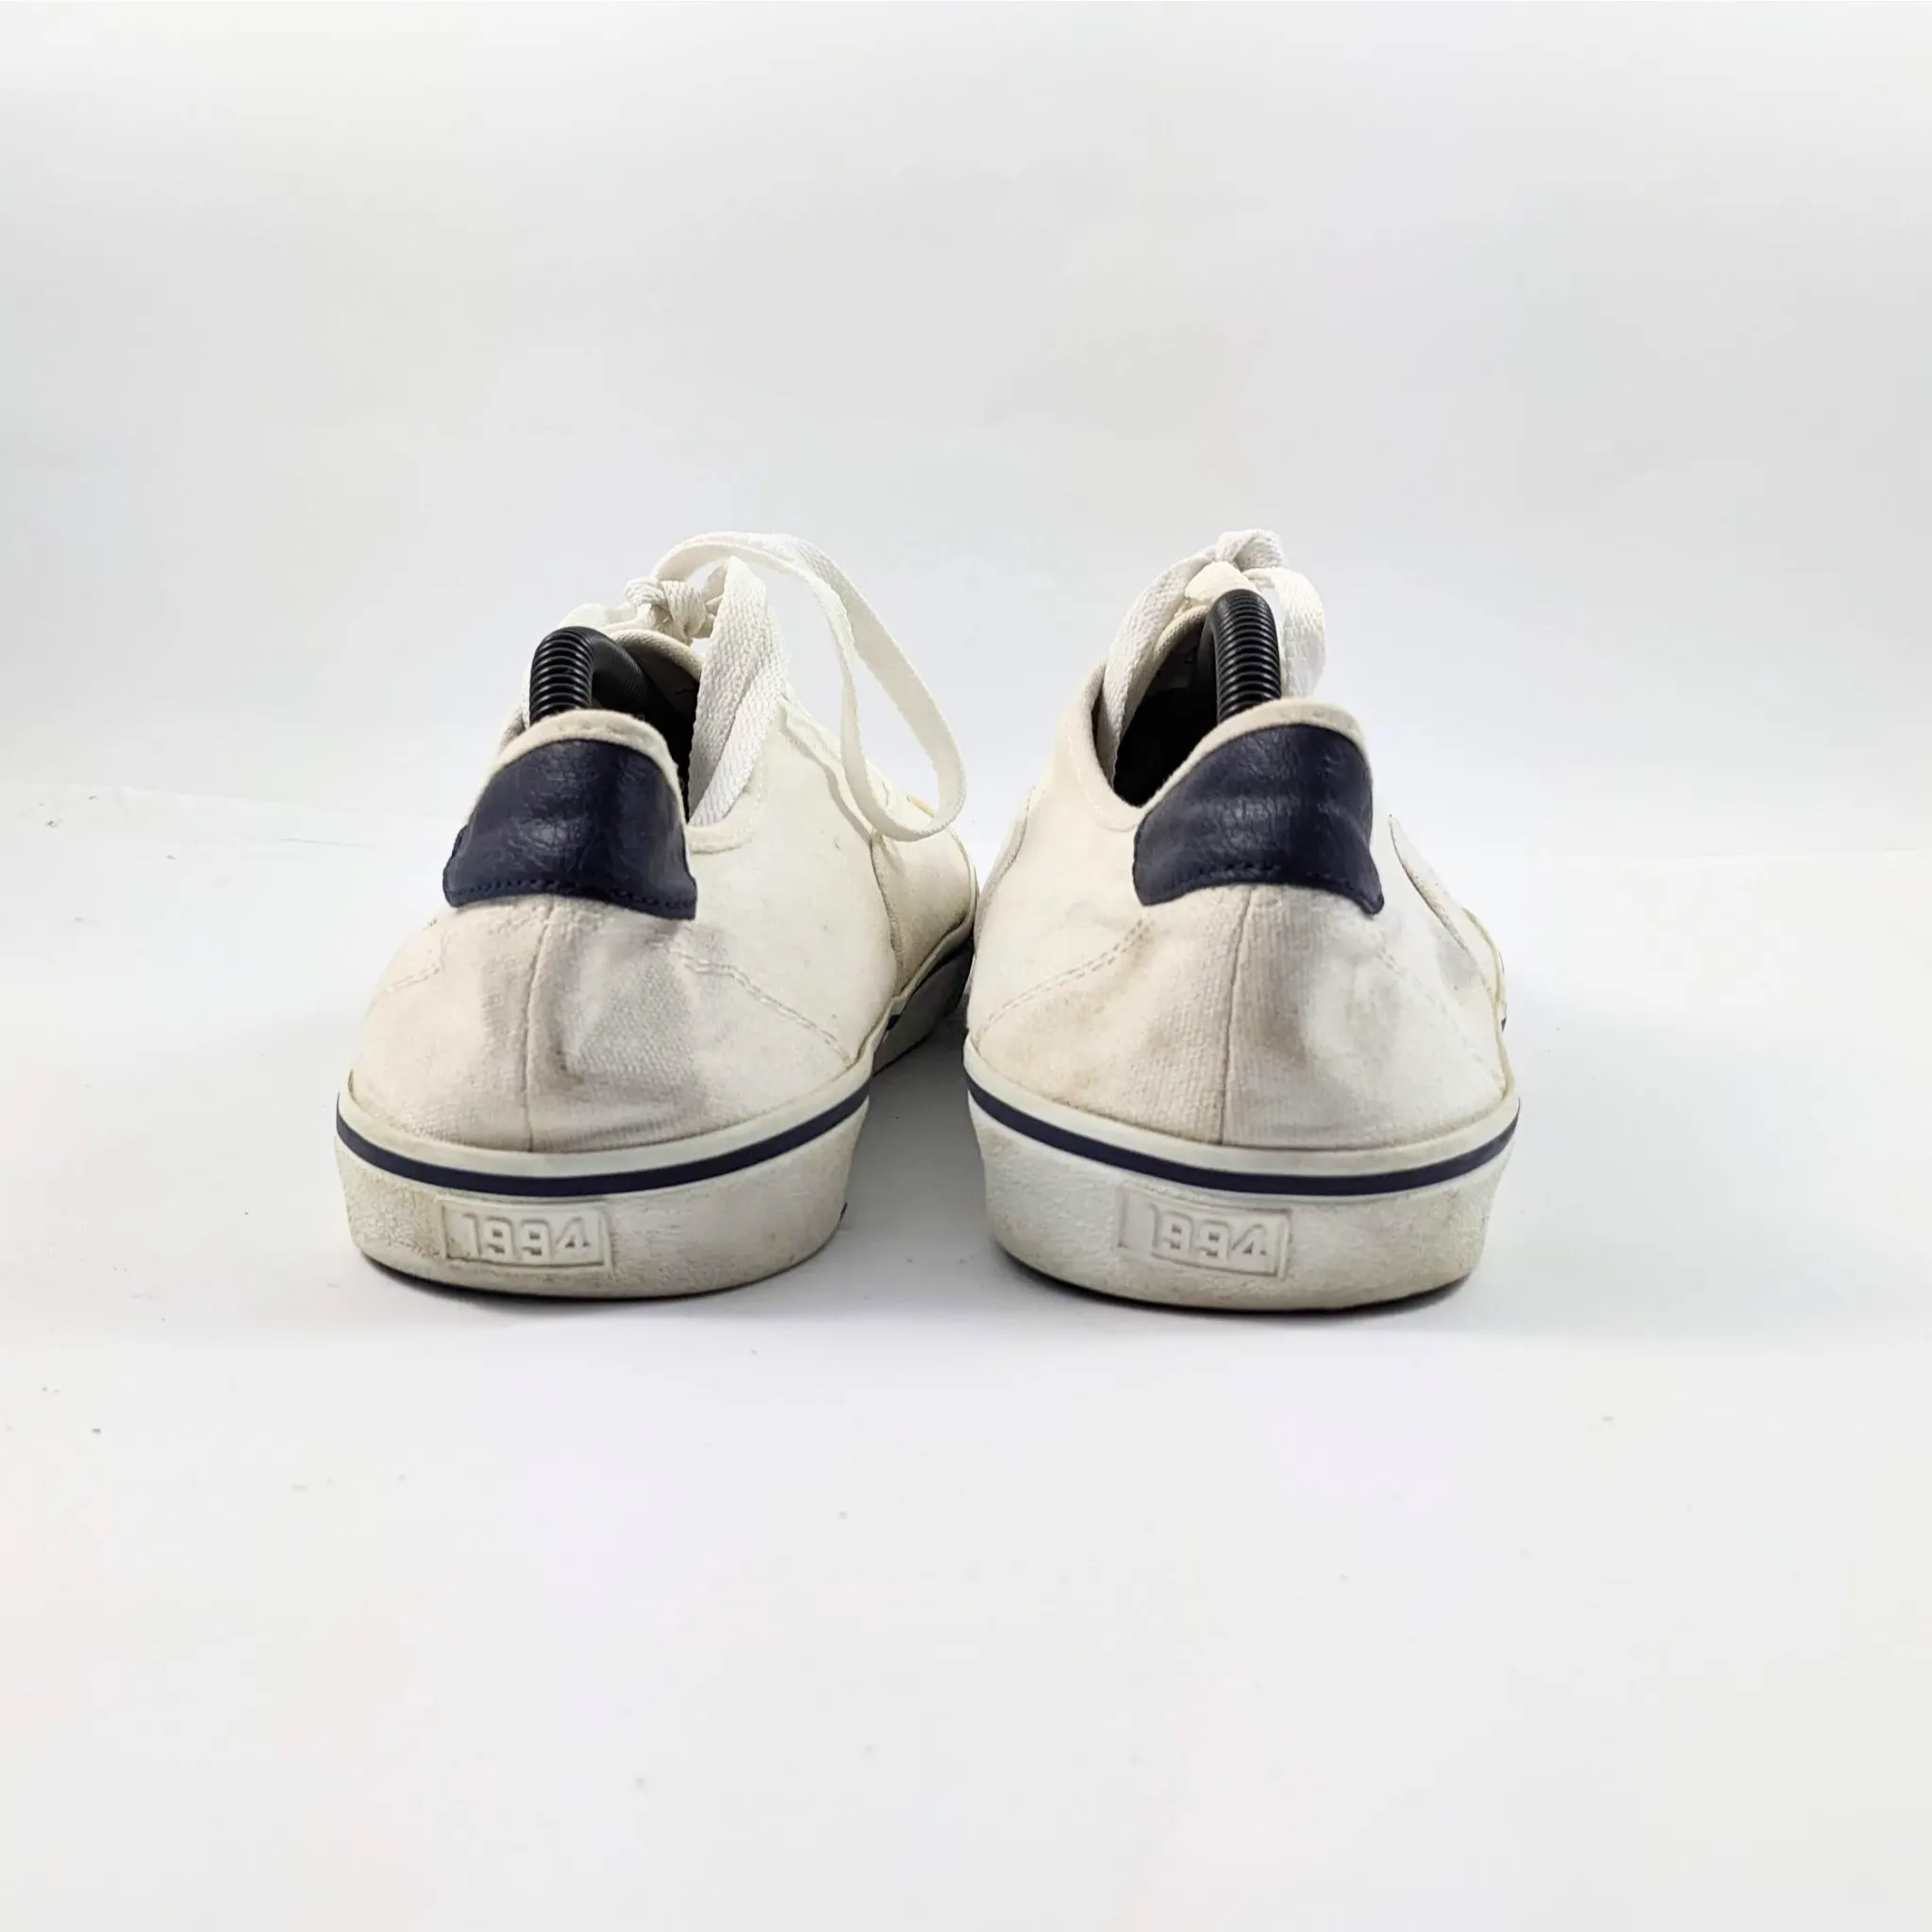 أحذية رياضية بيضاء قديمة البحرية